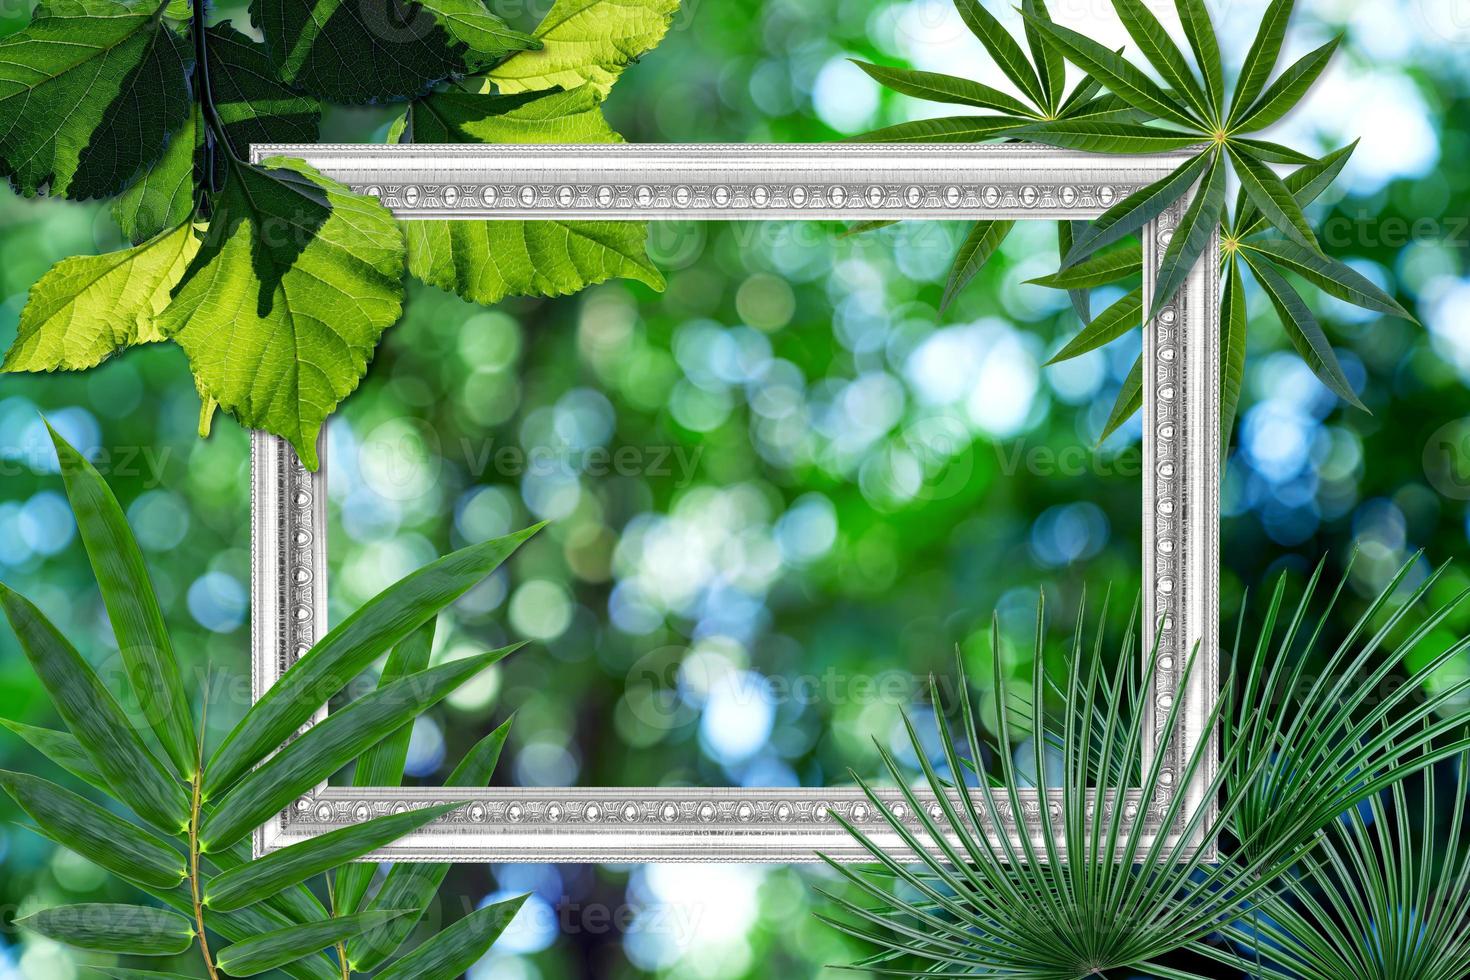 patrón de hojas verdes con marco de imagen blanco antiguo sobre fondo borroso bokeh natural, hoja de planta de otoño foto